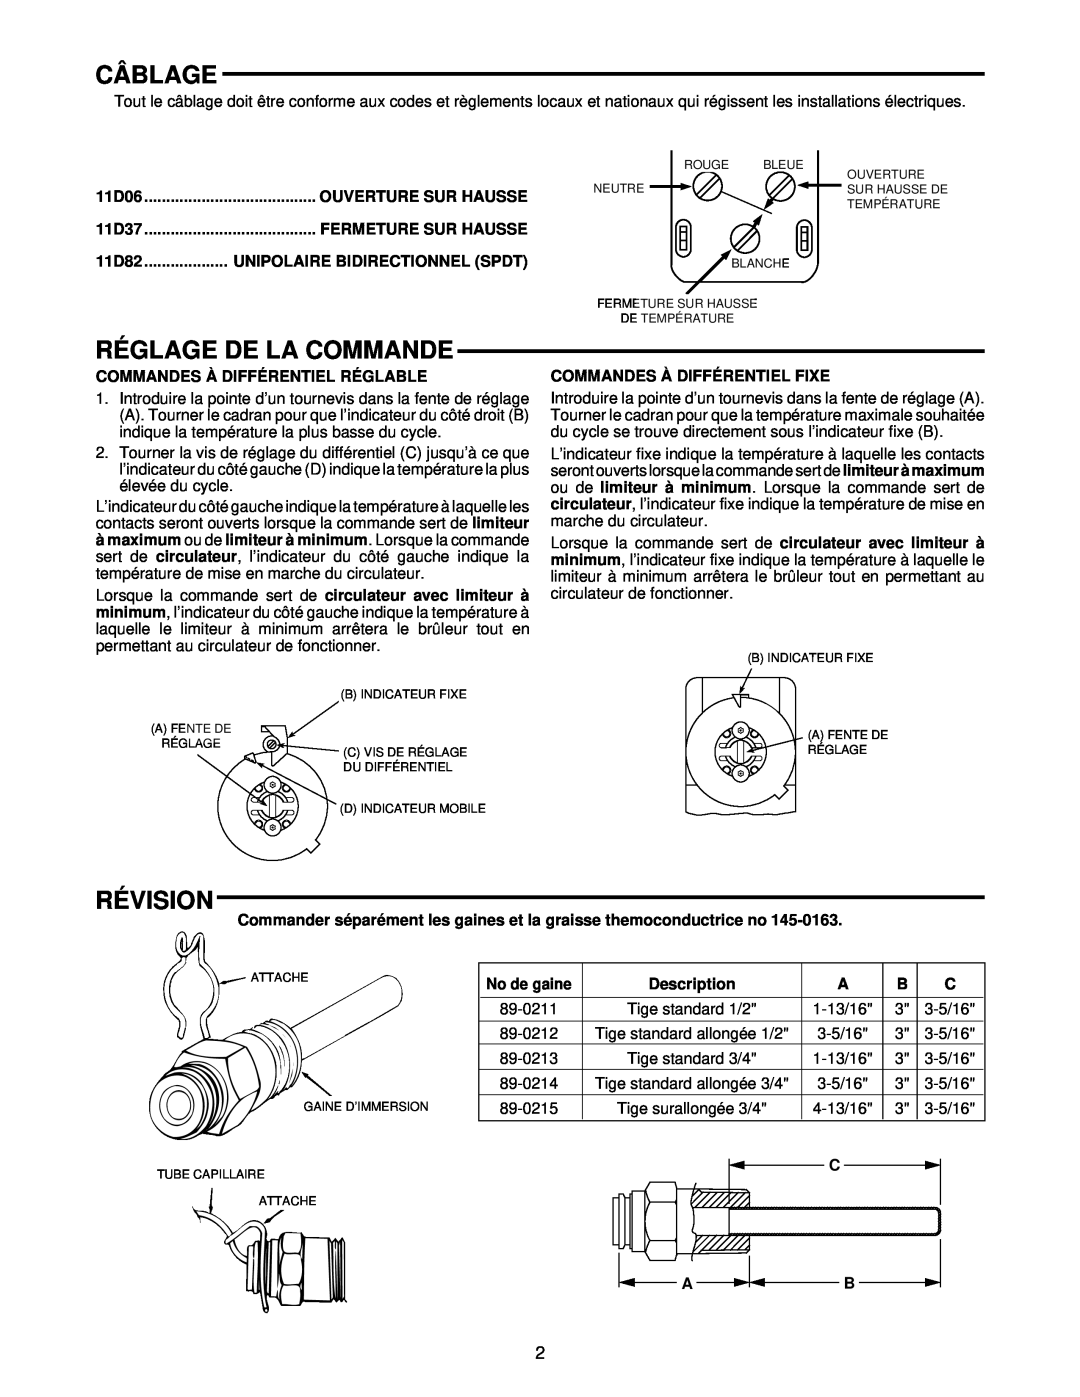 White Rodgers 11D06, 11D82, 11D37 installation instructions Câblage, Réglage De La Commande, Révision 